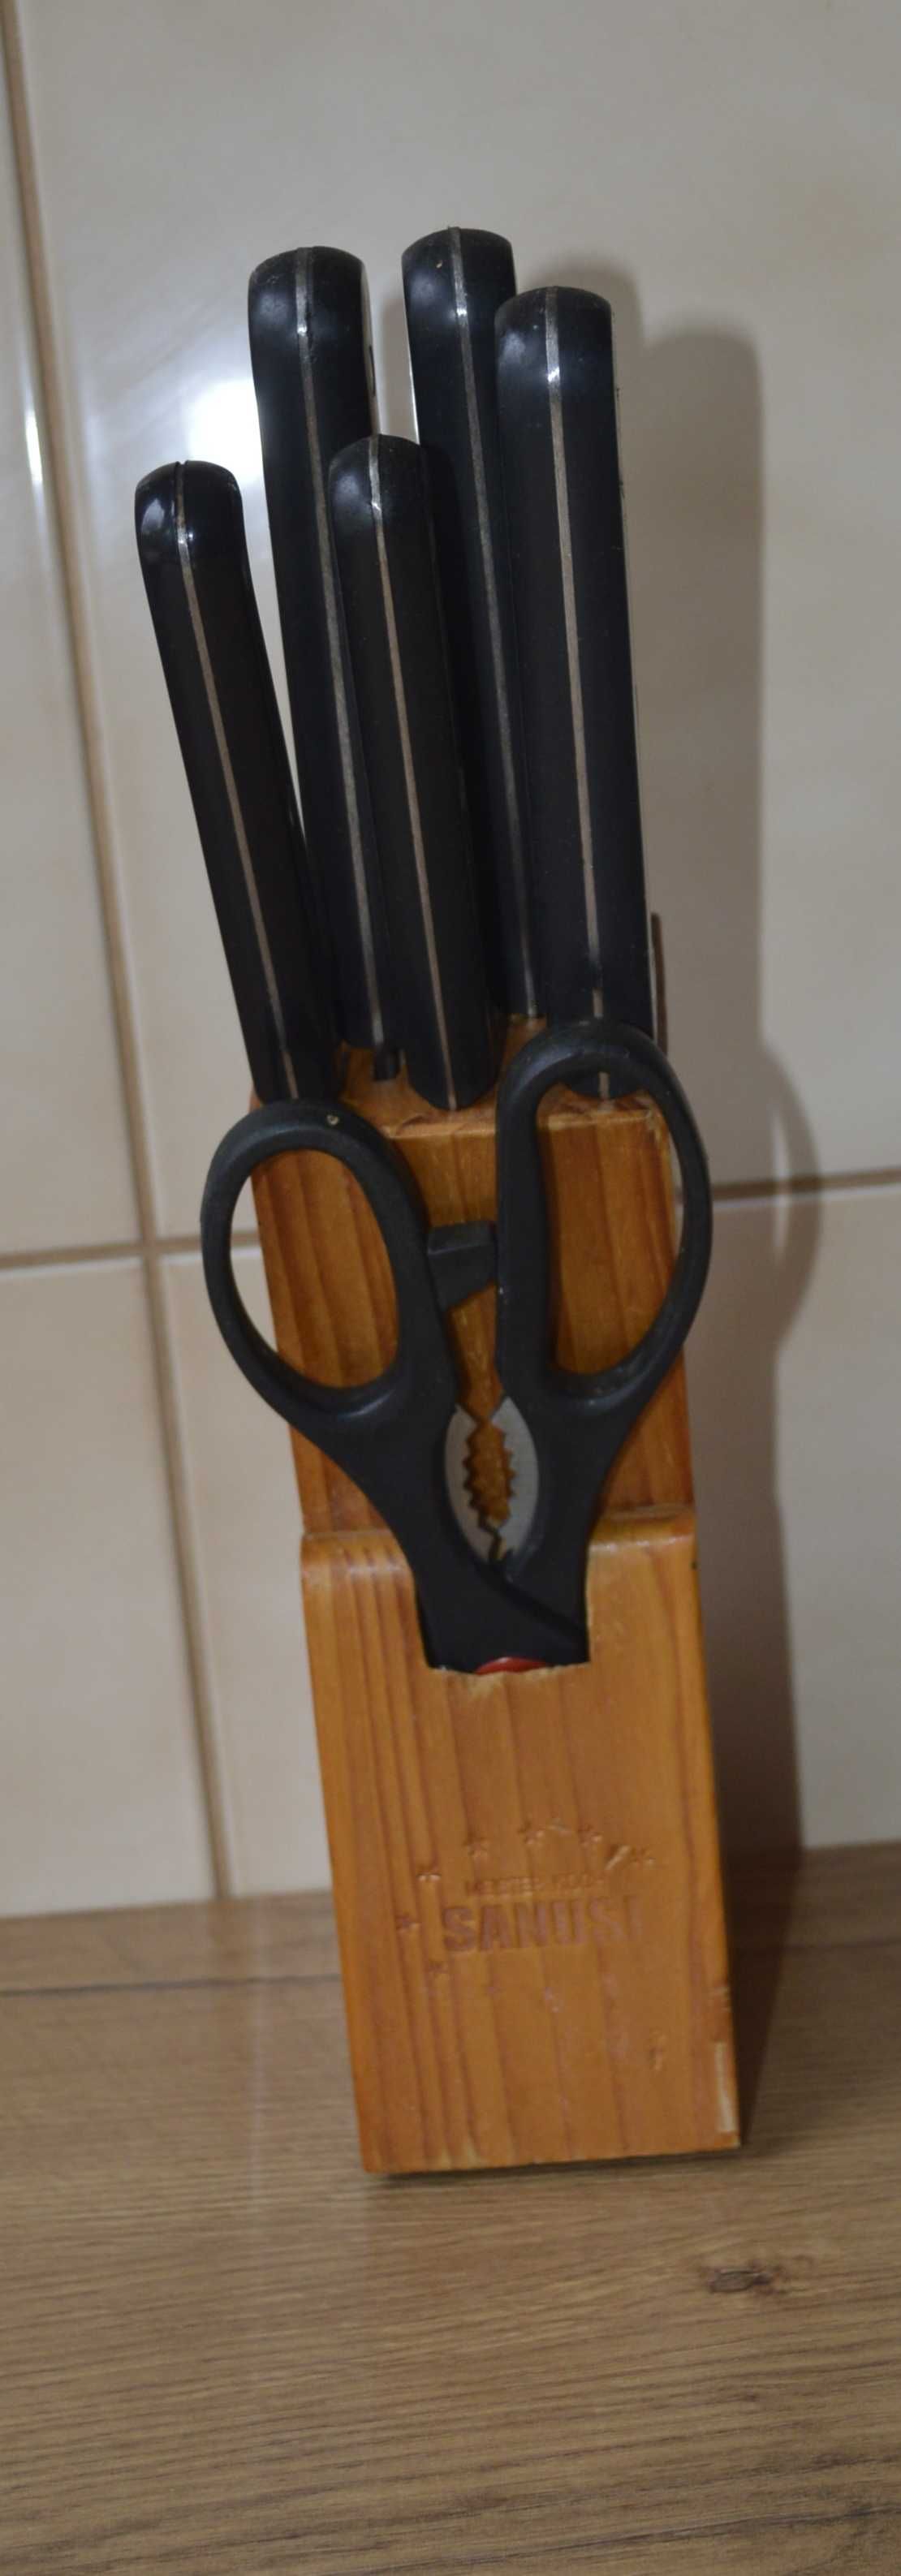 Noże w bloku -Sanusi -5 szt plus nożyczki